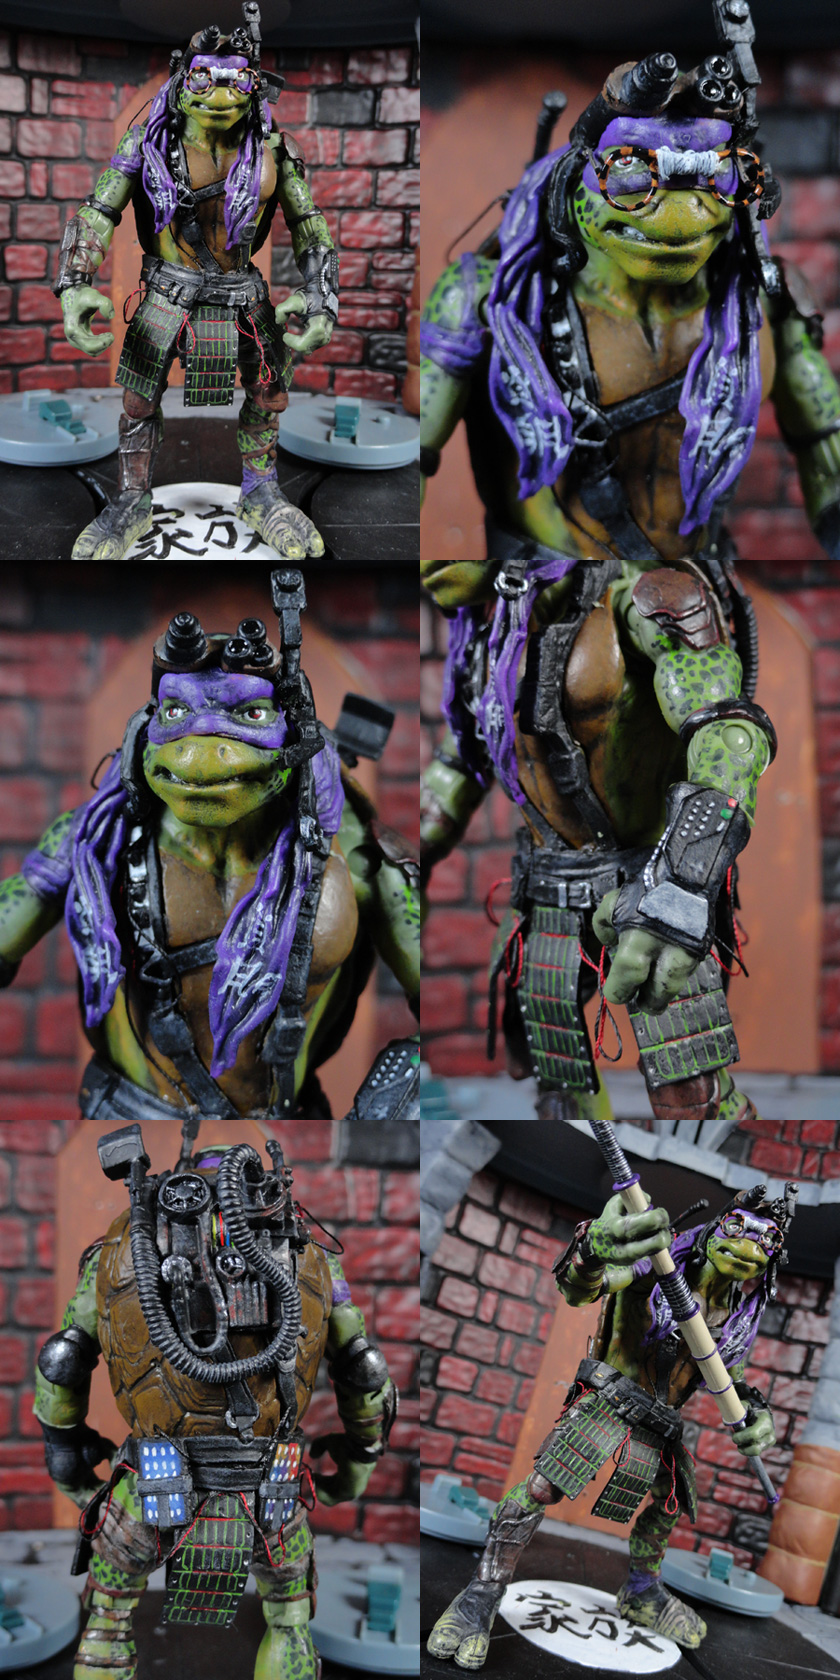 Custom Teenage Mutant Ninja Turtles (2014 Movie Accurate) Action Figure Set